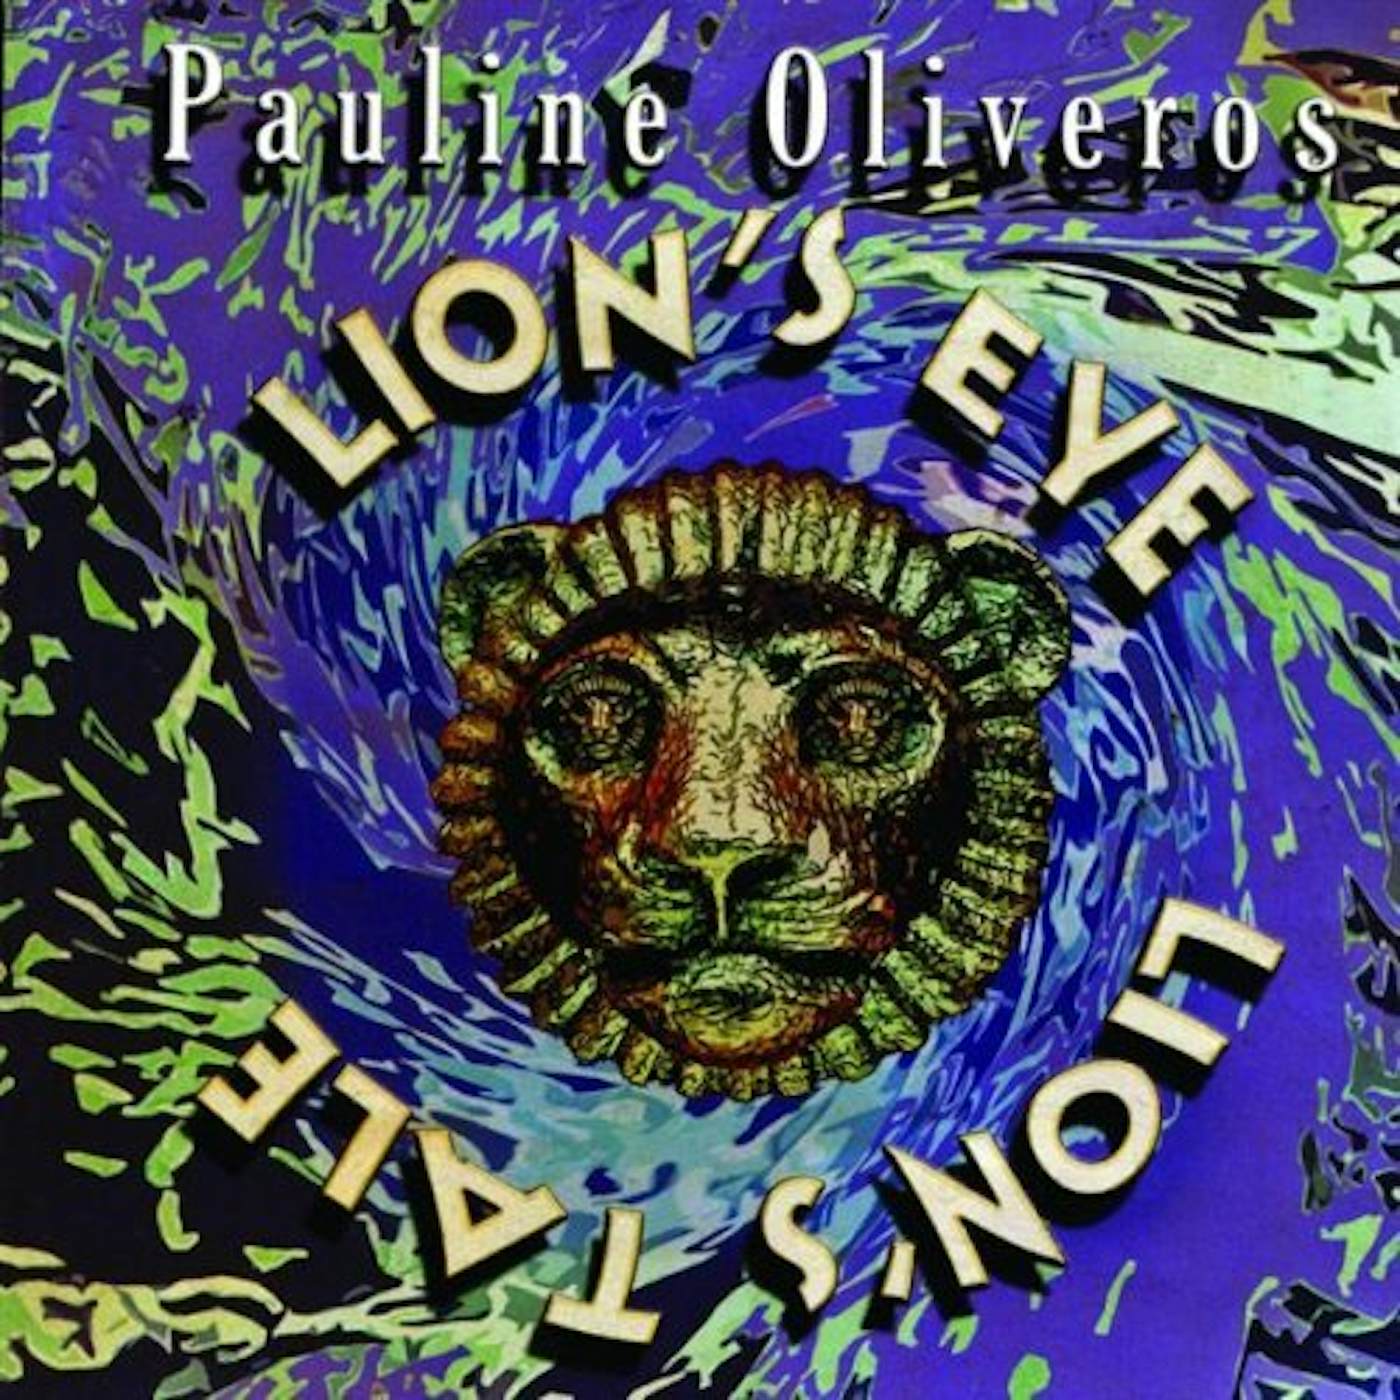 Pauline Oliveros LION'S EYE / LION'S TALE CD